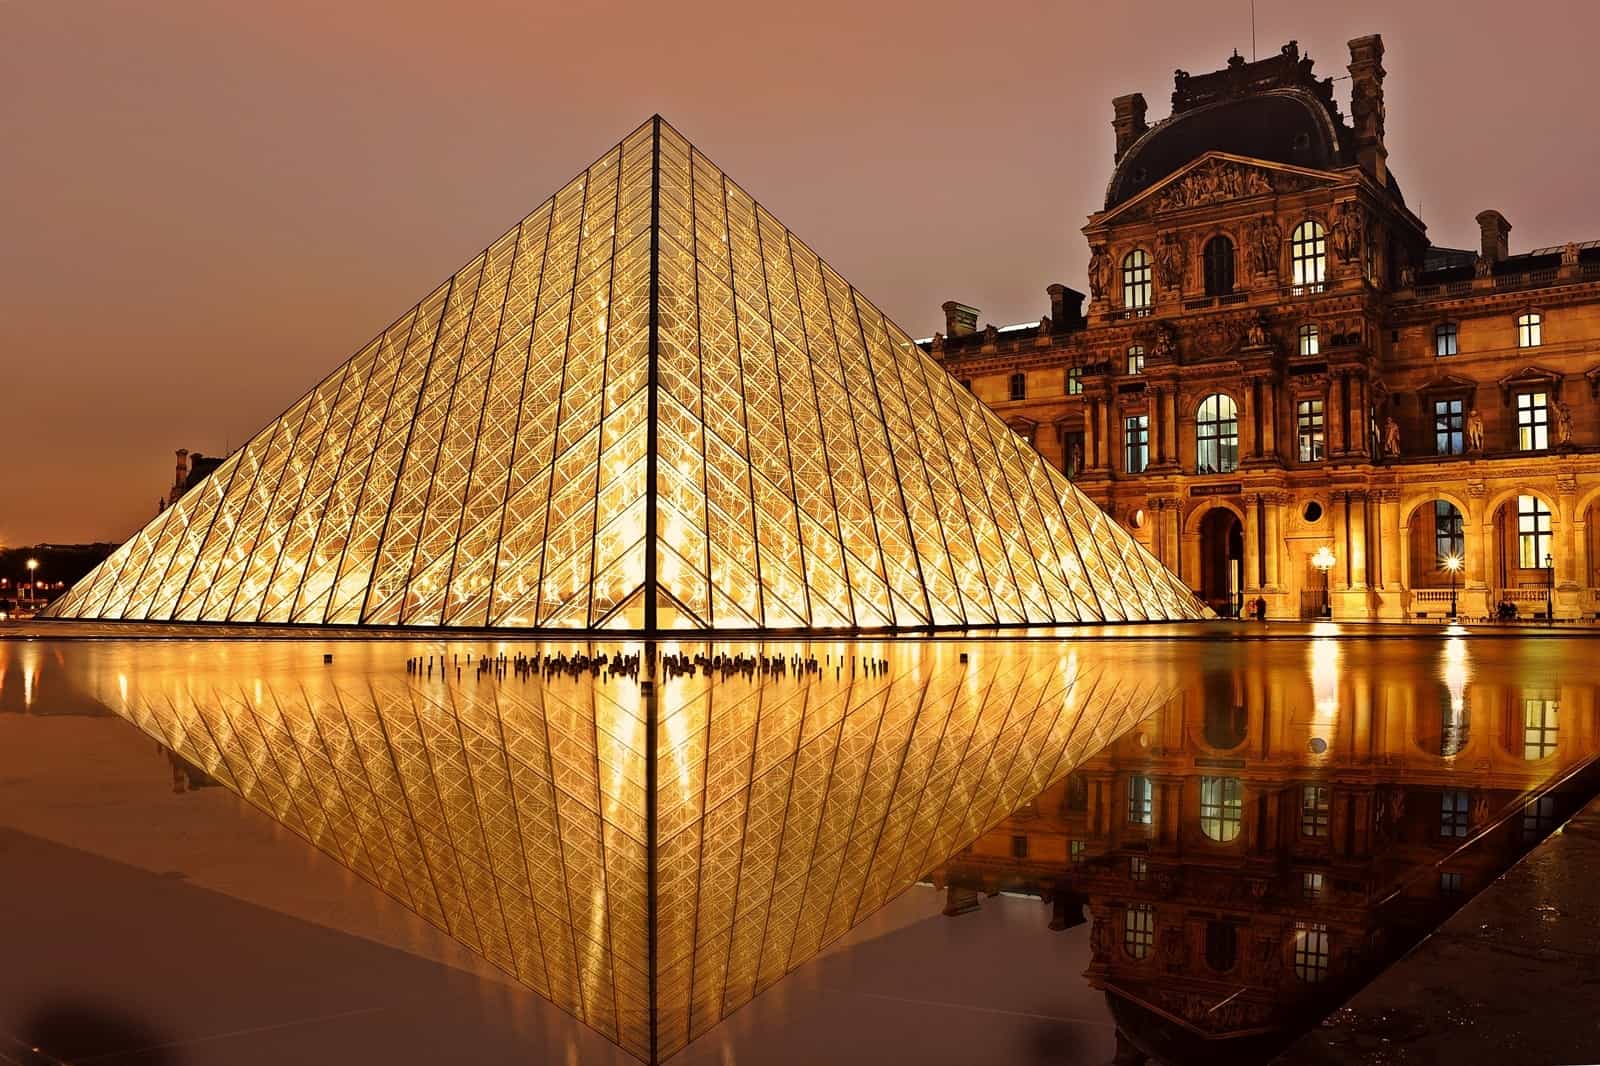 The Louvre ~ Paris, France